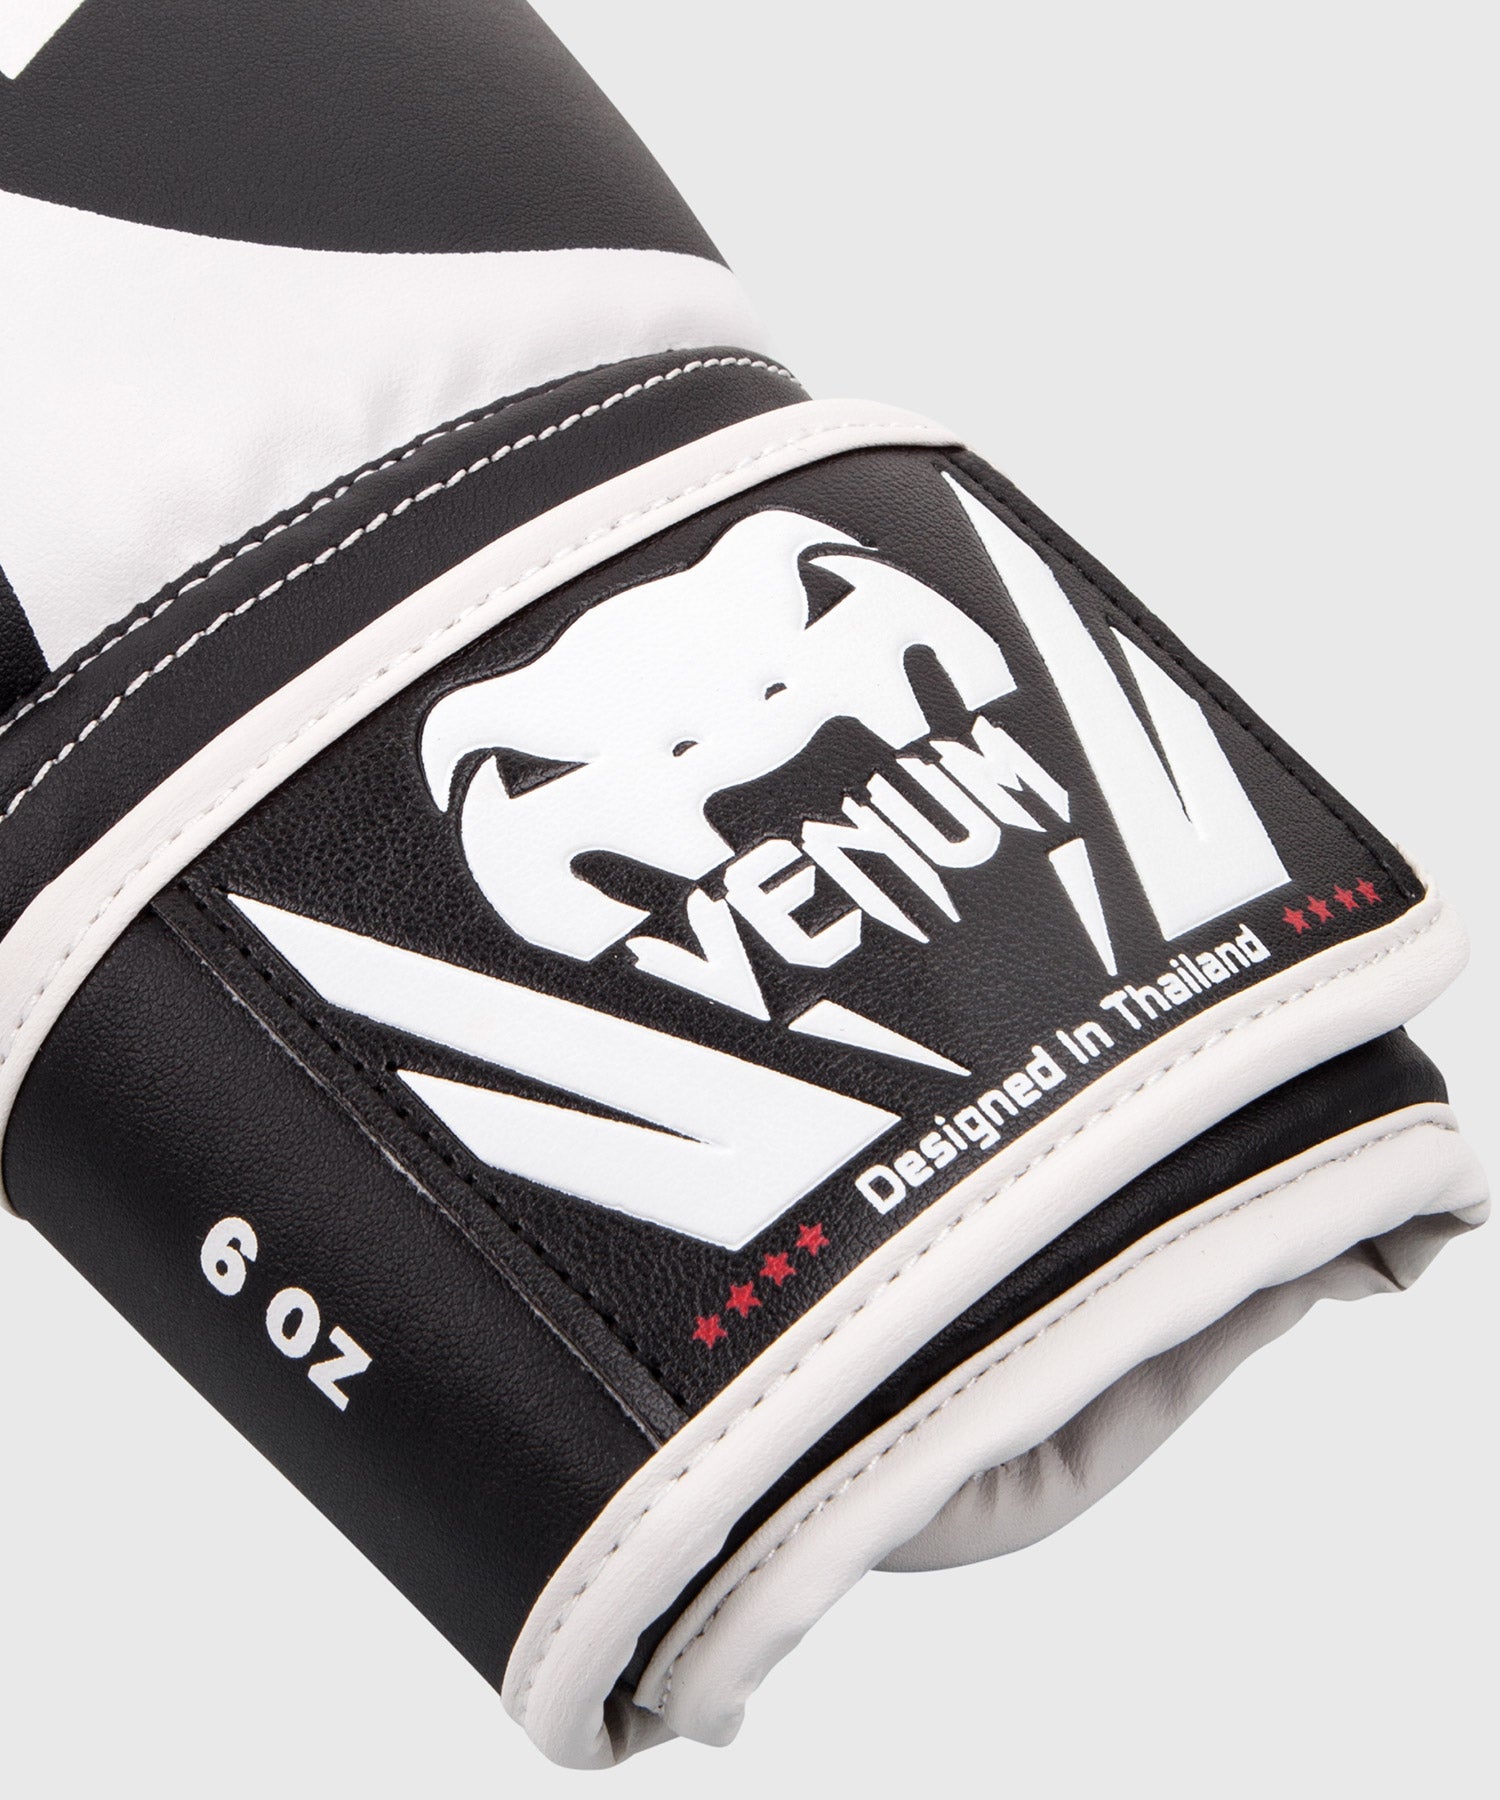 Venum Challenger 2.0 Ensemble d'entraînement MMA, gants dorés, protège-tibias  noirs, gants MMA noirs, couvre